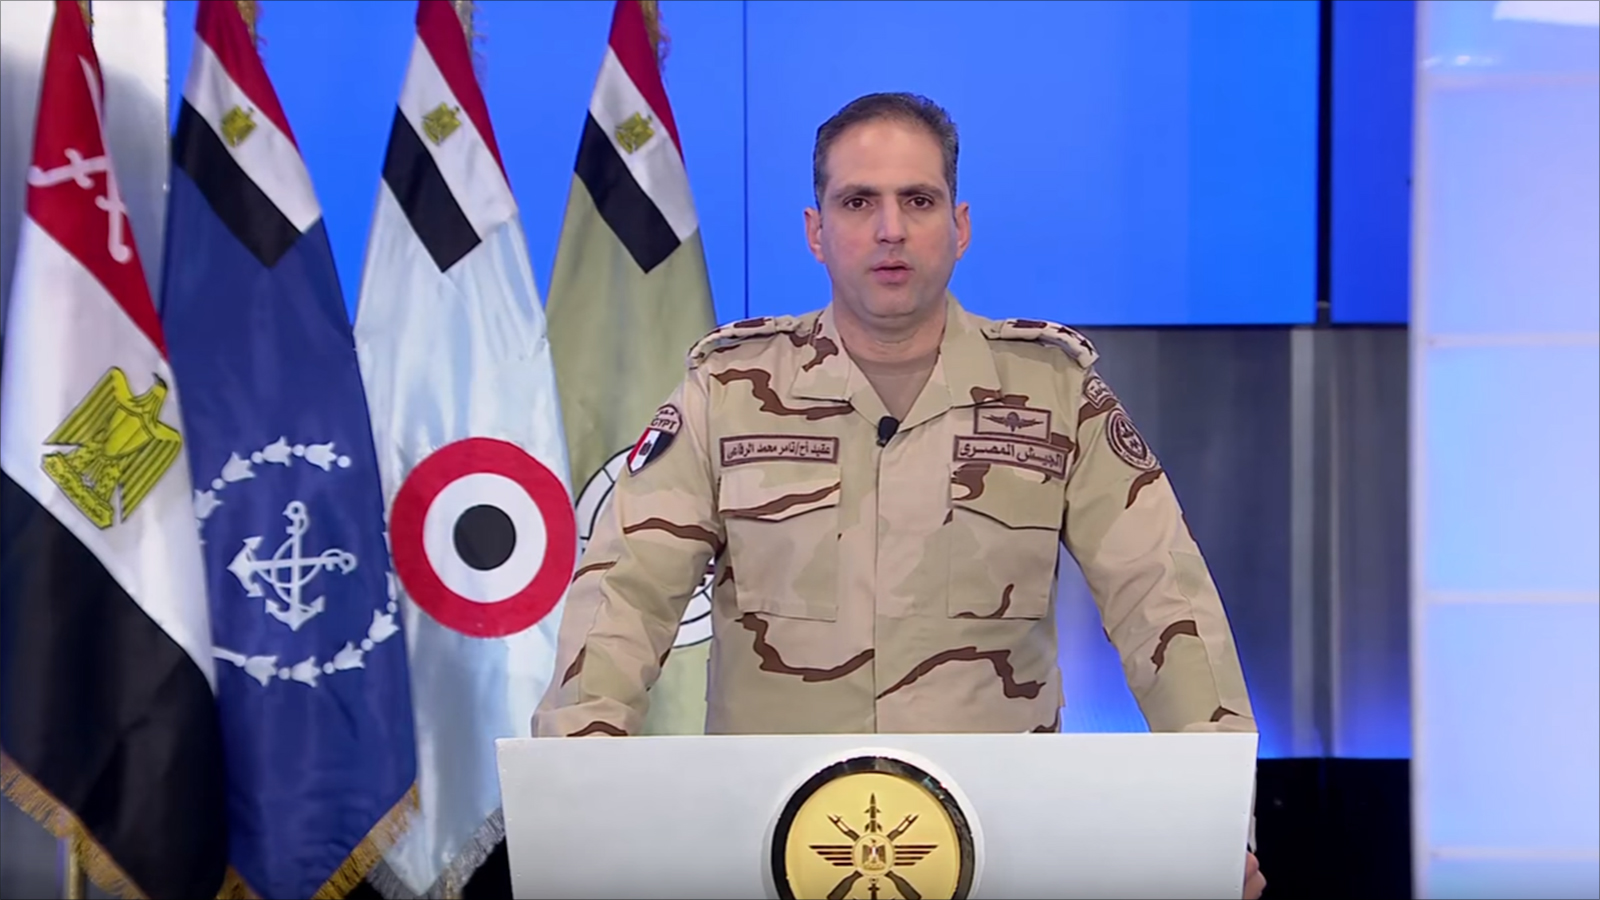 أعلن النظام المصري أن العملية الحالية سيتعدى نطاقها سيناء لشرق الدلتا وستكون عملية واسعة لما يسمى الخطر الداعشي على مصر